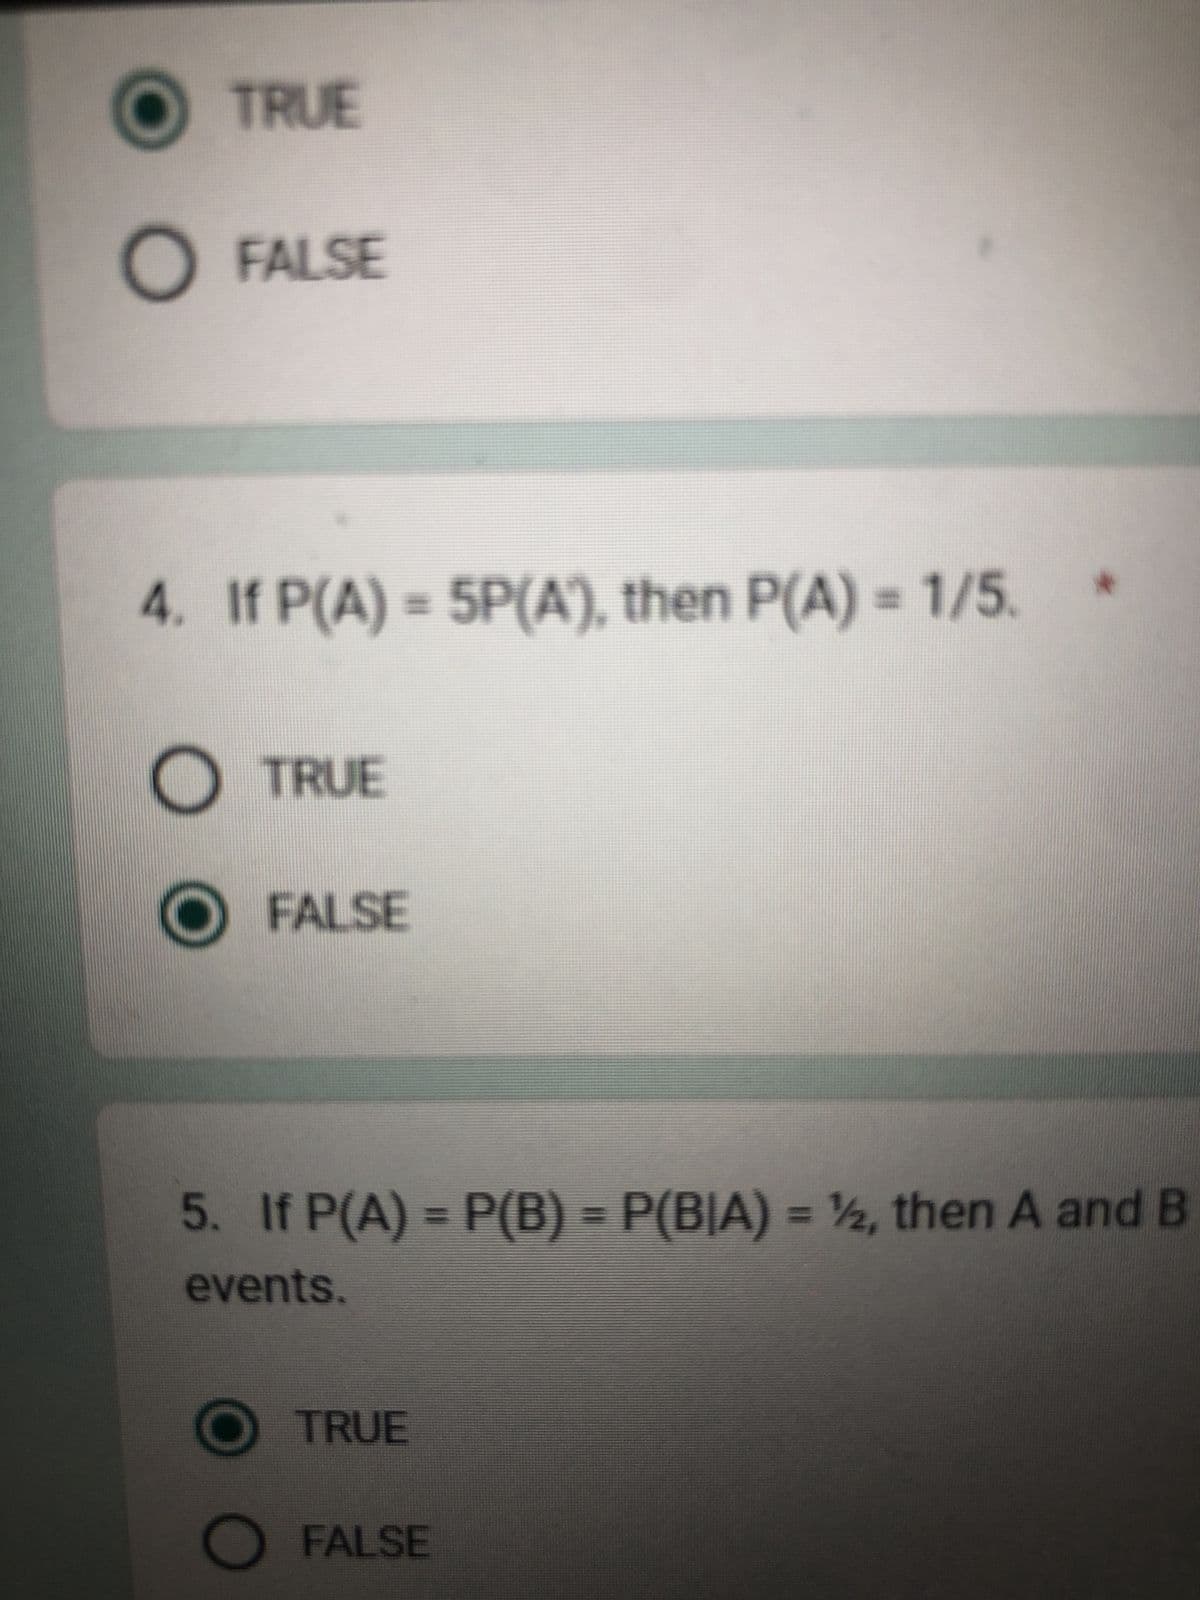 TRUE
O FALSE
4. If P(A) = 5P(A), then P(A) = 1/5.
O TRUE
FALSE
5. If P(A) = P(B) = P(B|A) = ½, then A and B
events.
O TRUE
FALSE